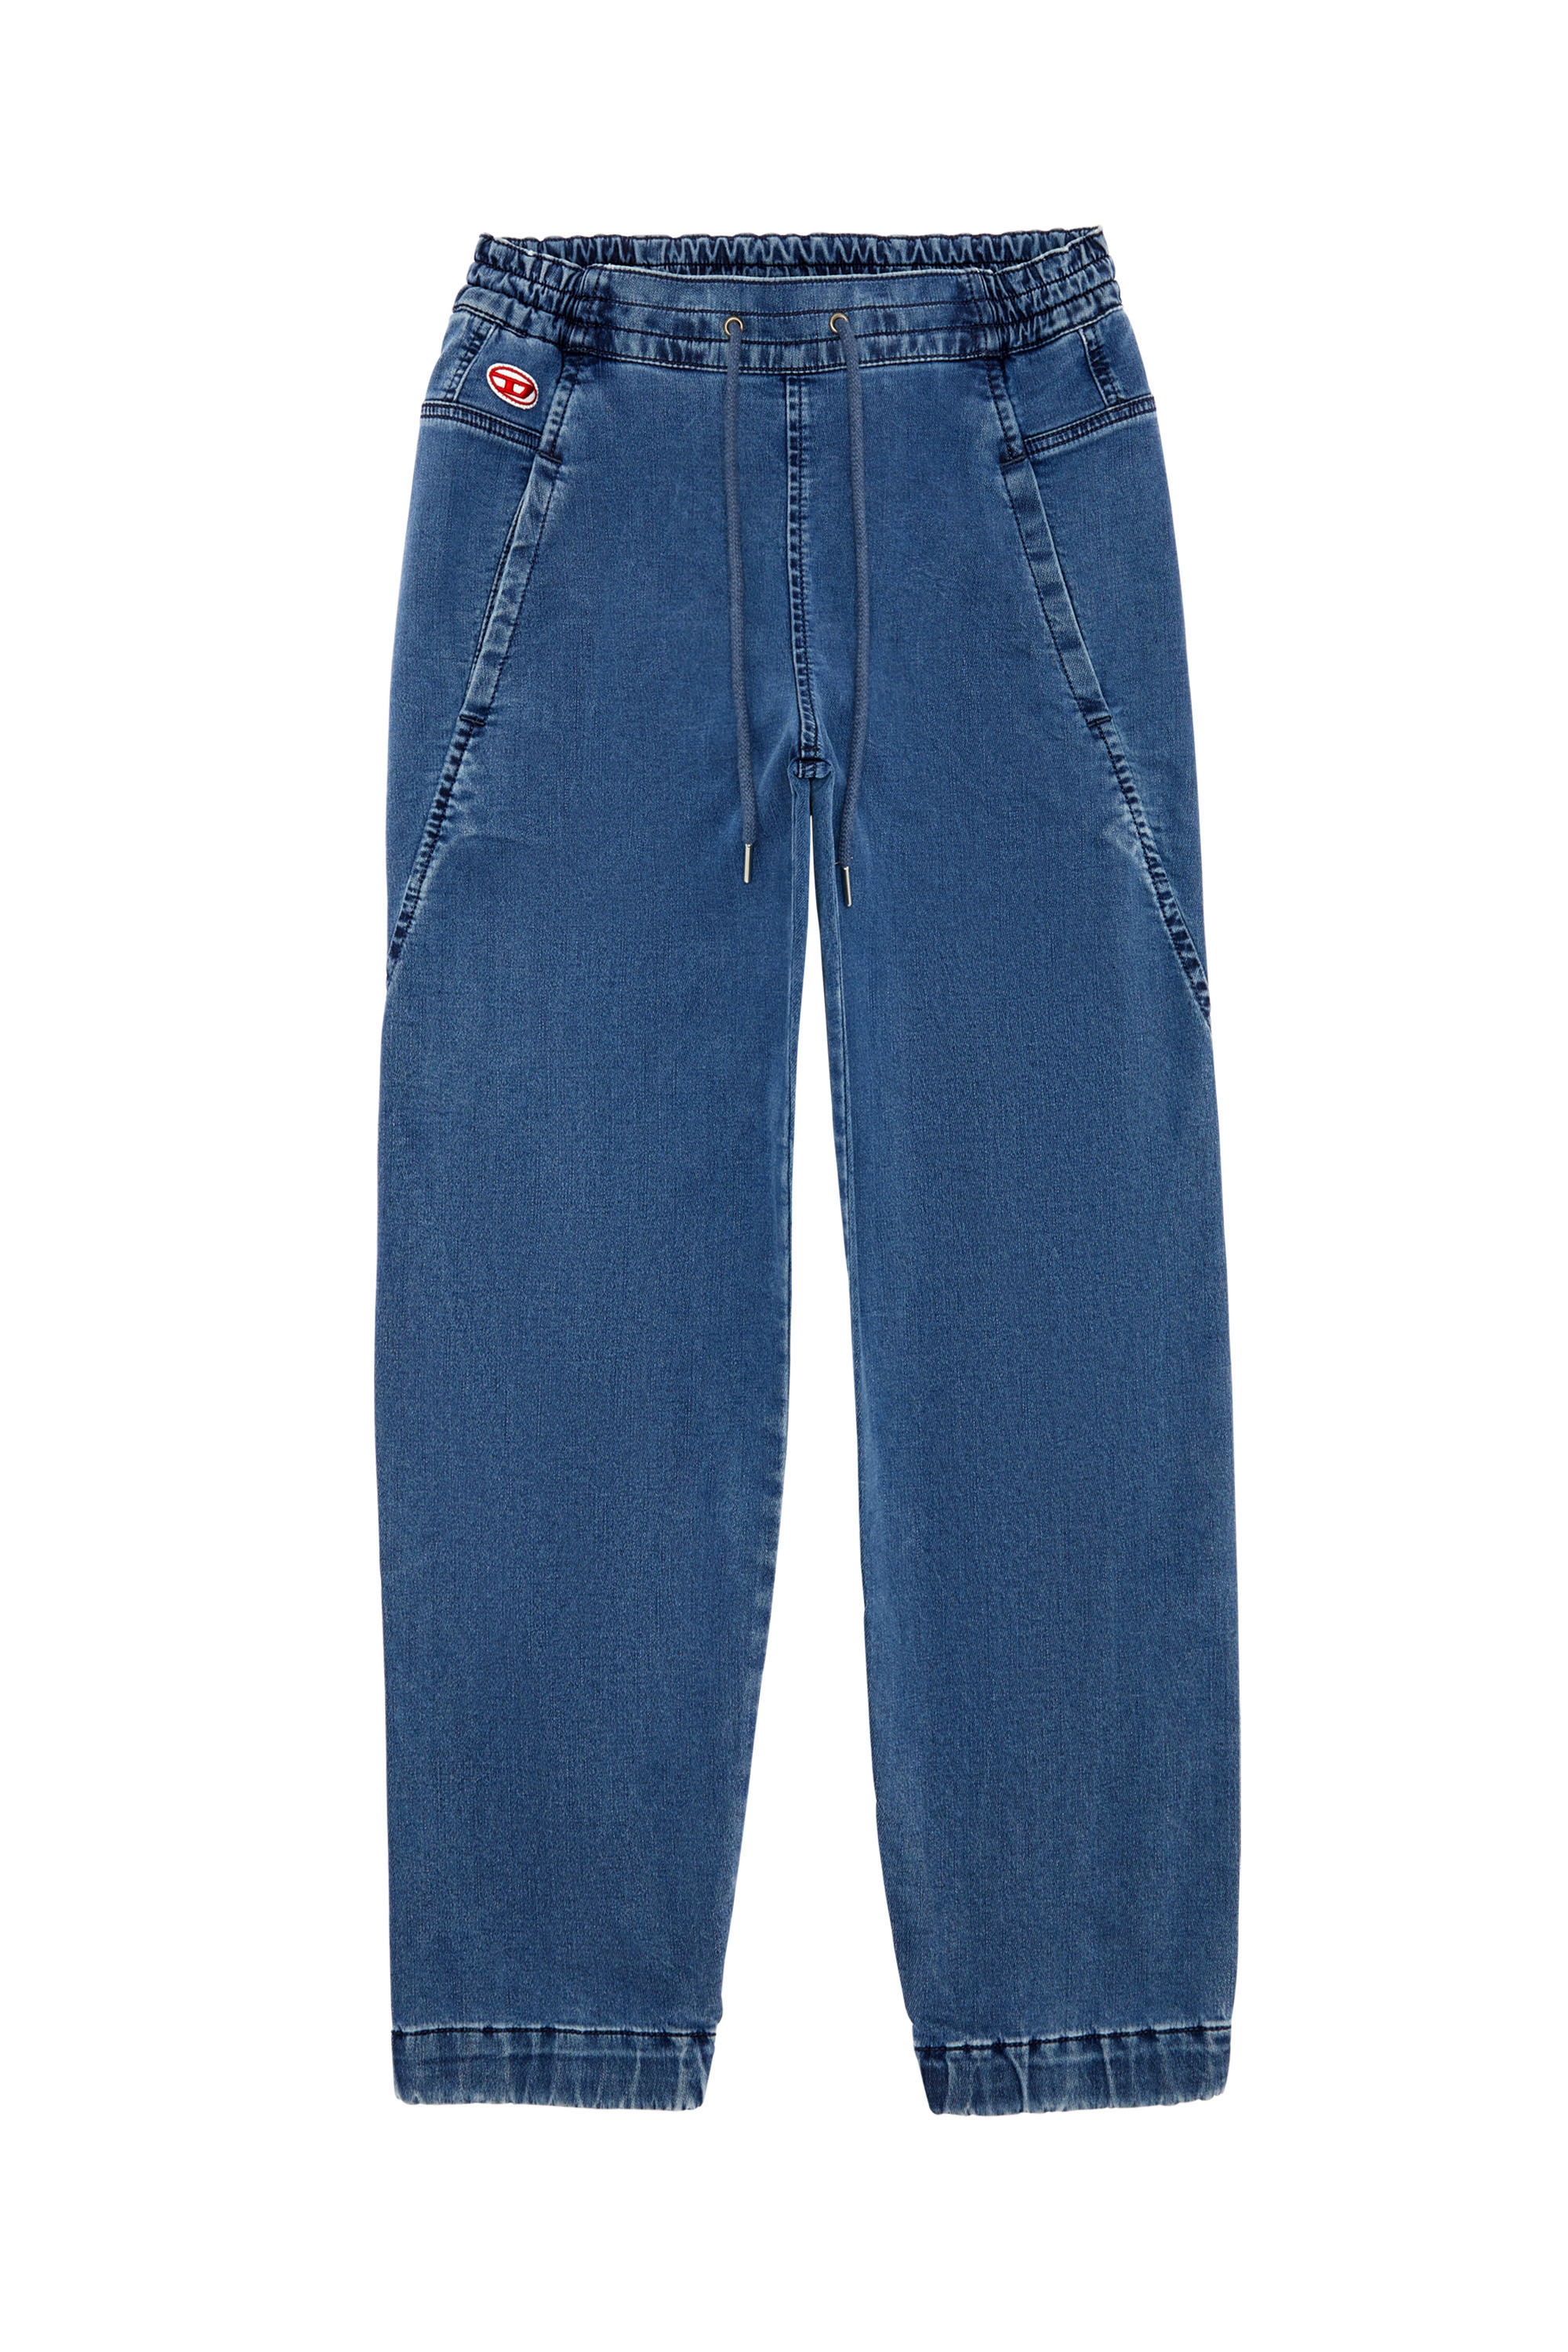 Krailey JoggJeans® 069ZK Boyfriend, Bleu moyen - Jeans